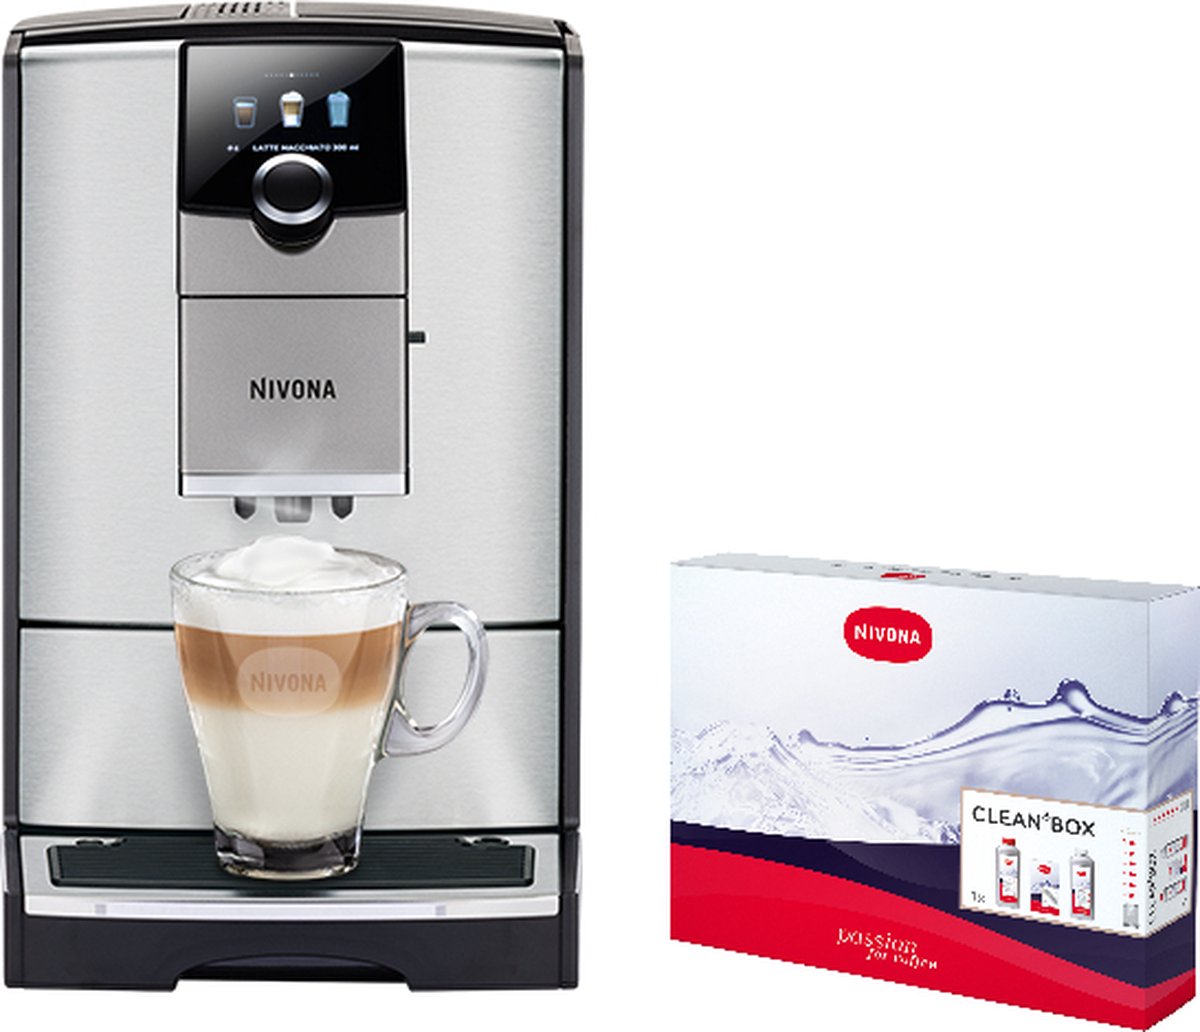 Nivona 799 volautomaat espressomachine RVS met automatische melkopschuimer [incl. gratis schoonmaakpakket twv 37 99 en gratis koffie van Koepoort Koffie]]